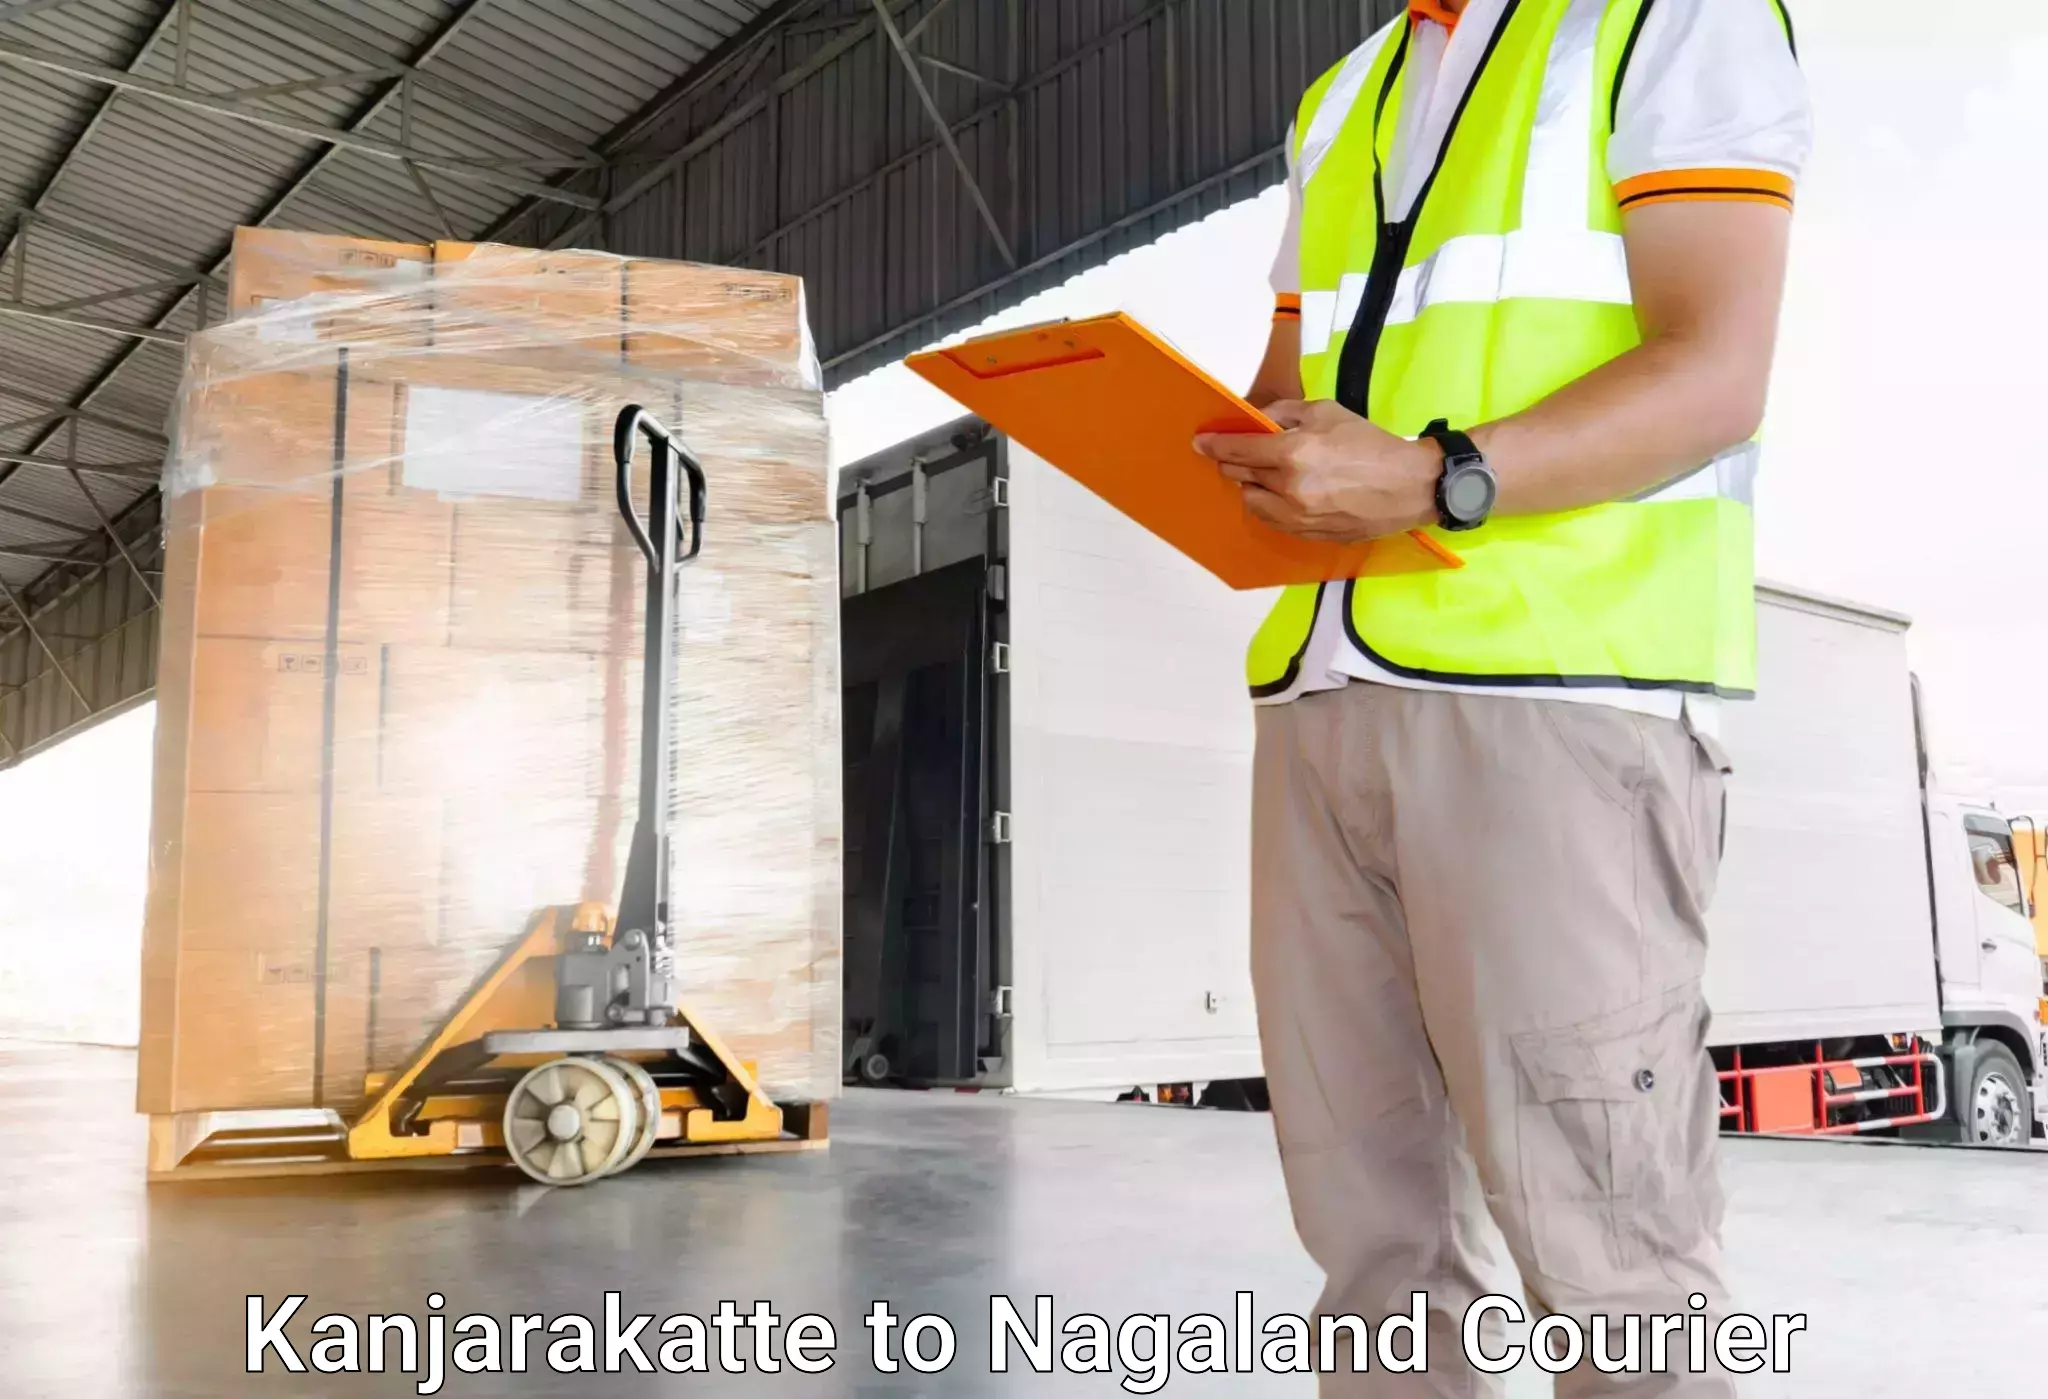 Hassle-free luggage shipping Kanjarakatte to Longleng